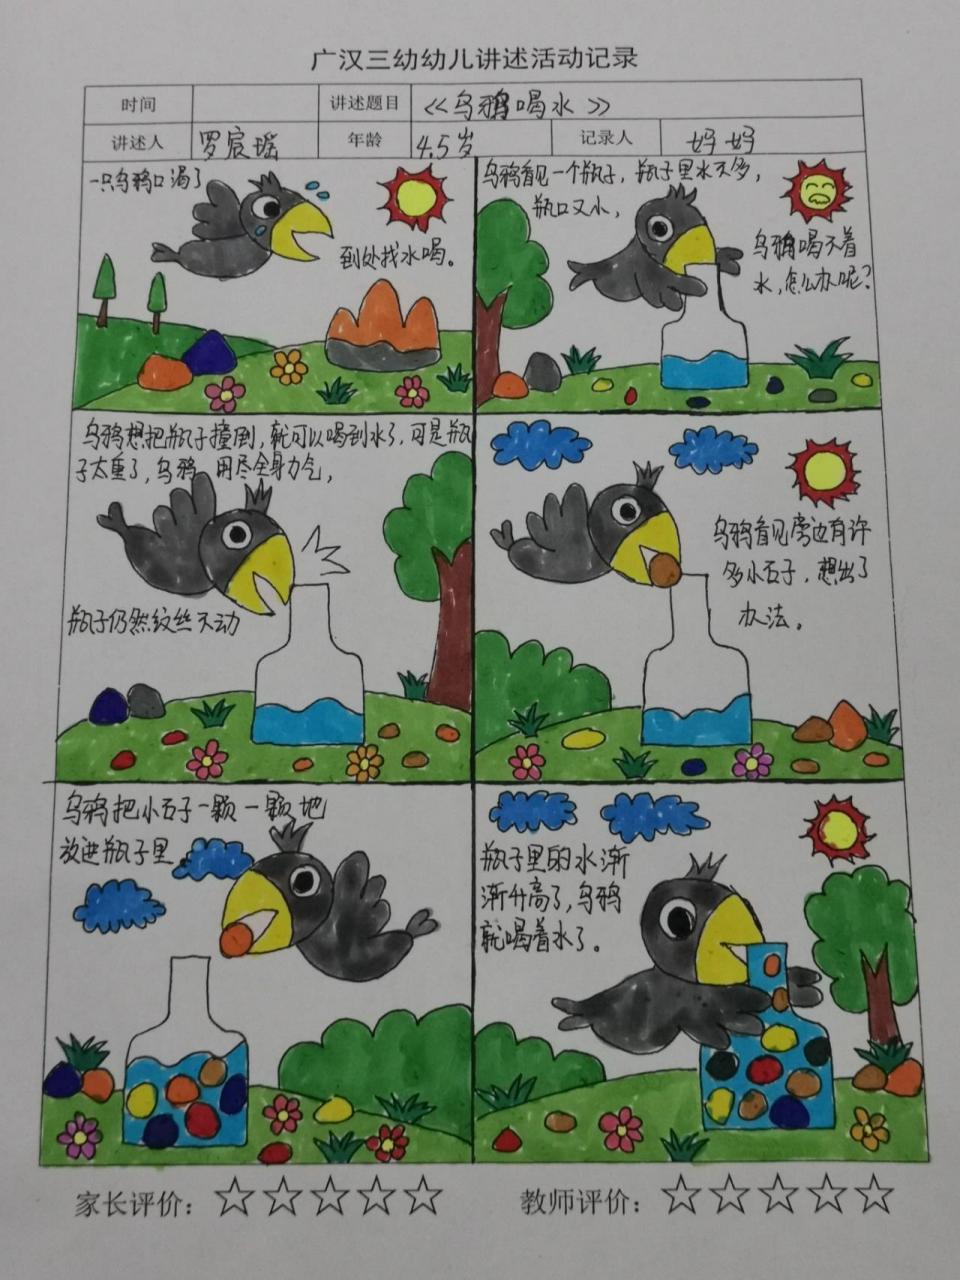 幼儿园自制绘本《乌鸦喝水》幼儿故事    《乌鸦喝水》 一只乌鸦口渴